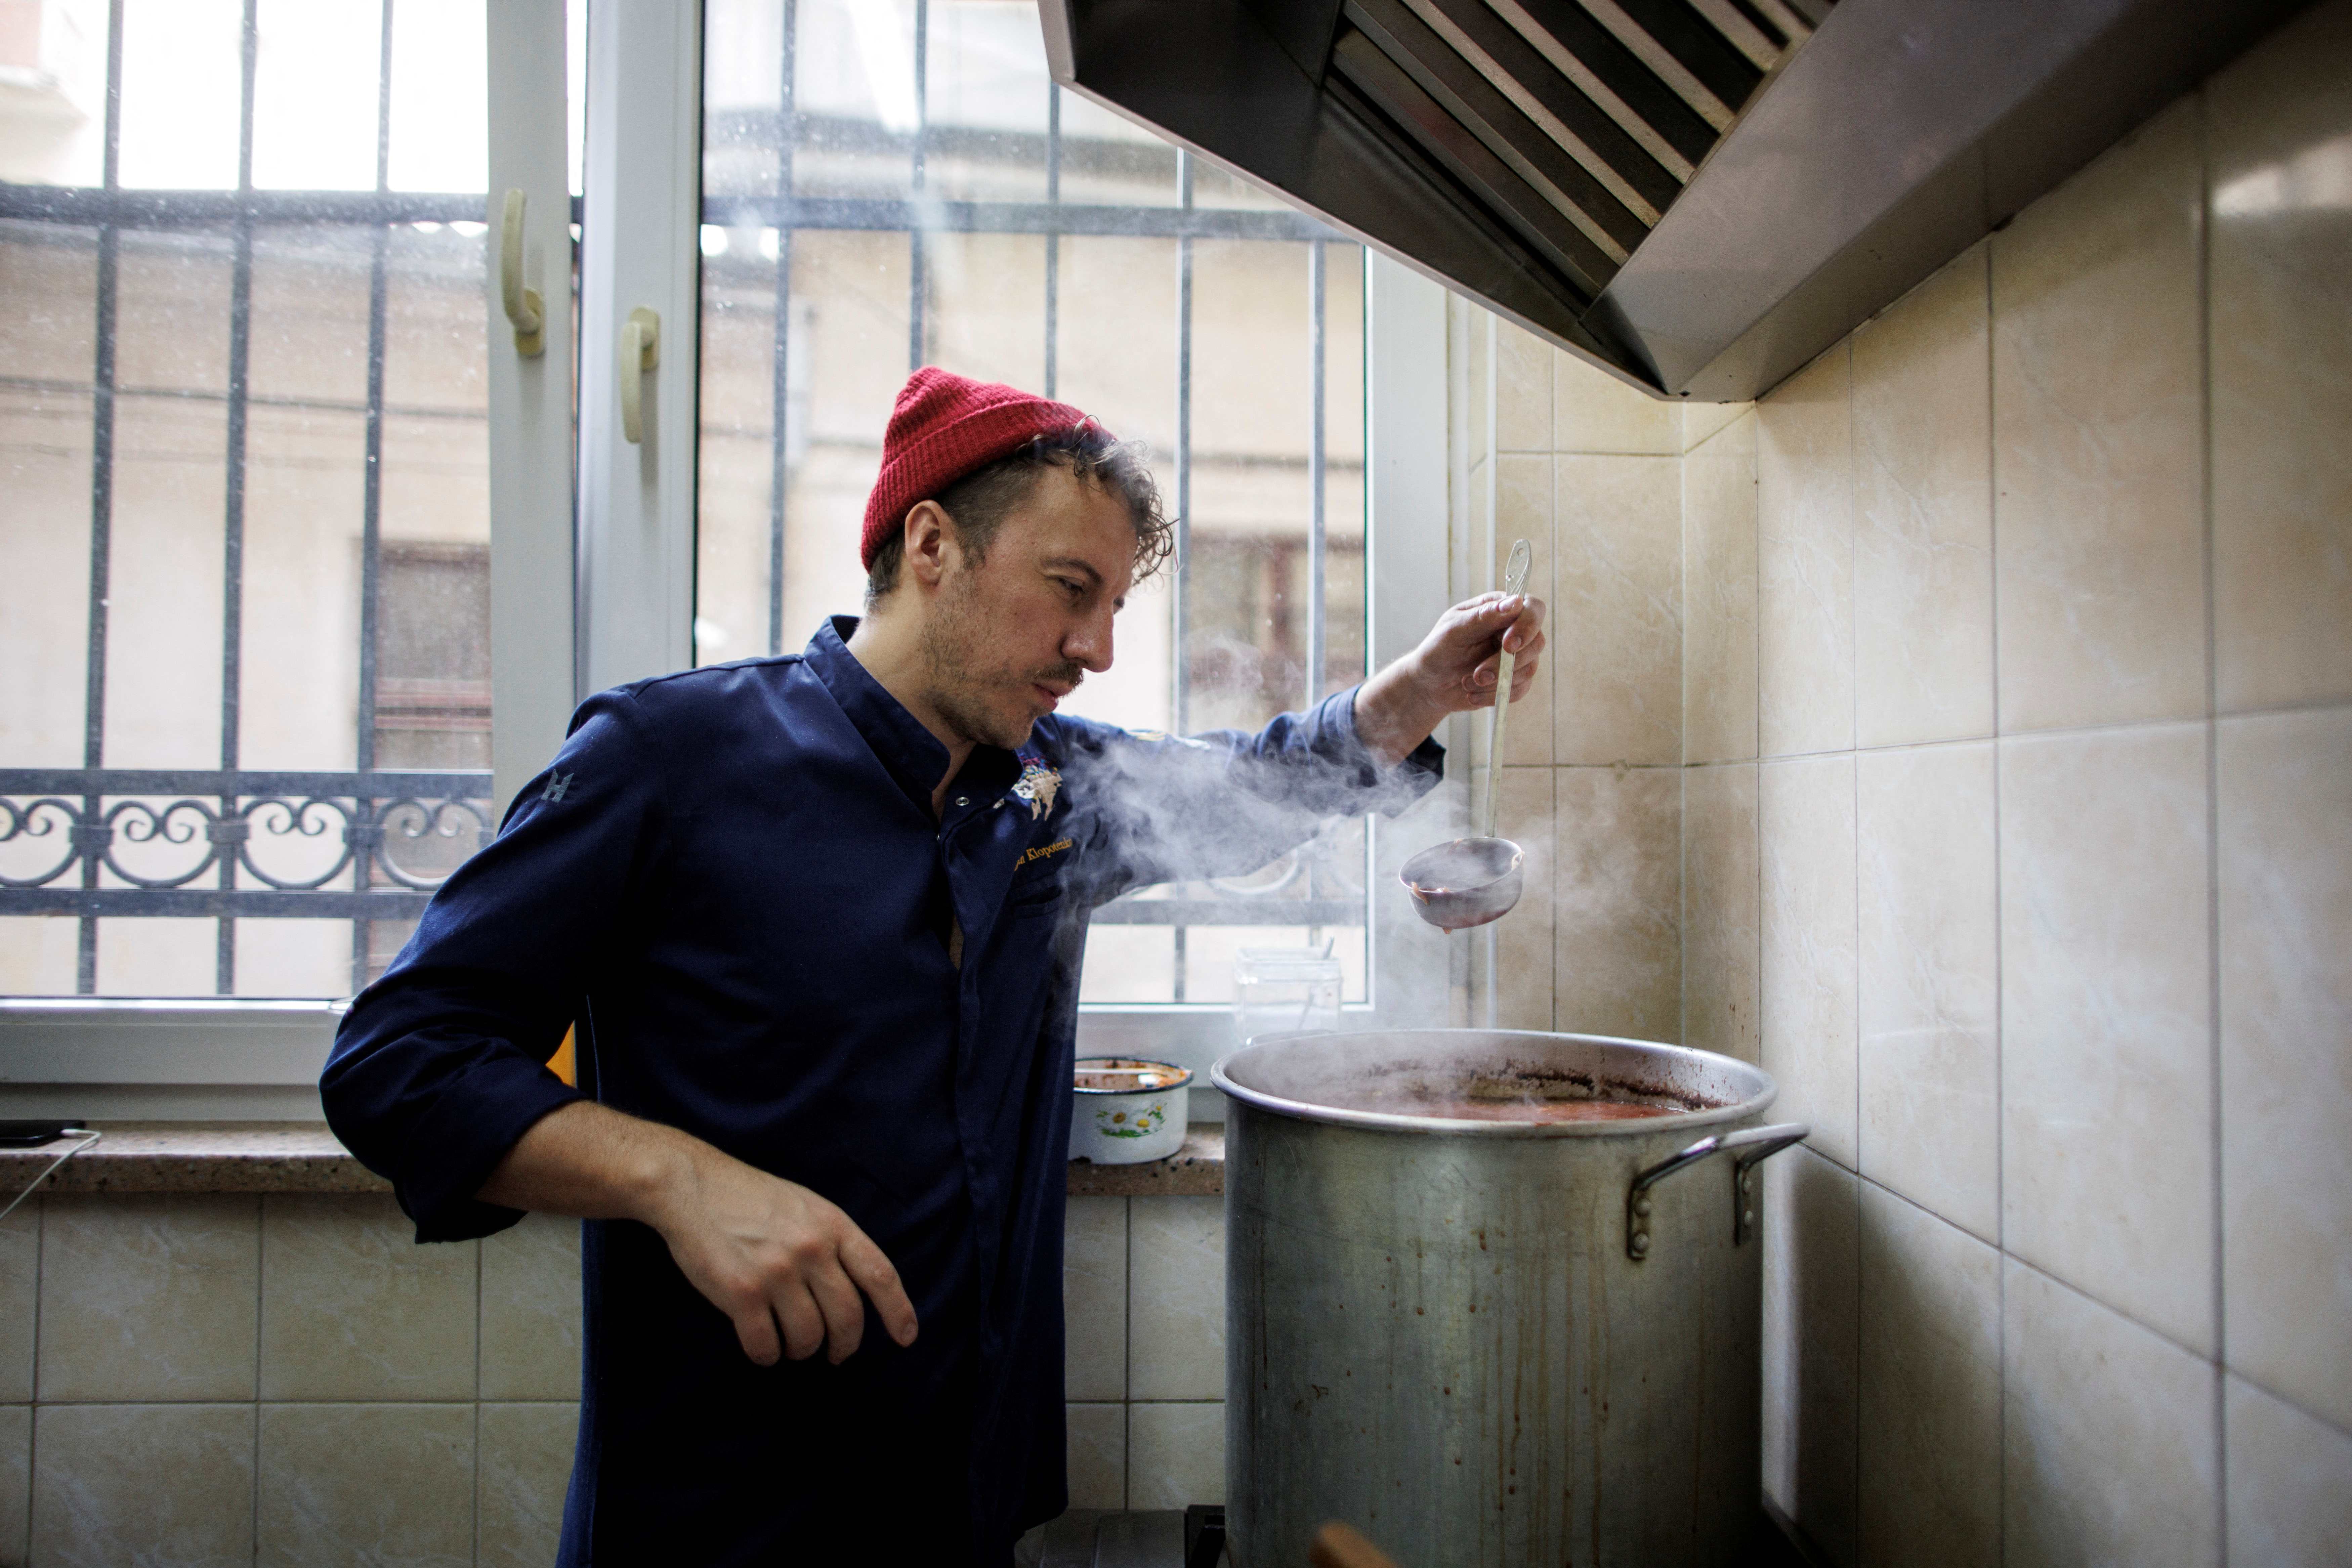 Ukrainian celebrity chef serves up free meals for refugees in Lviv